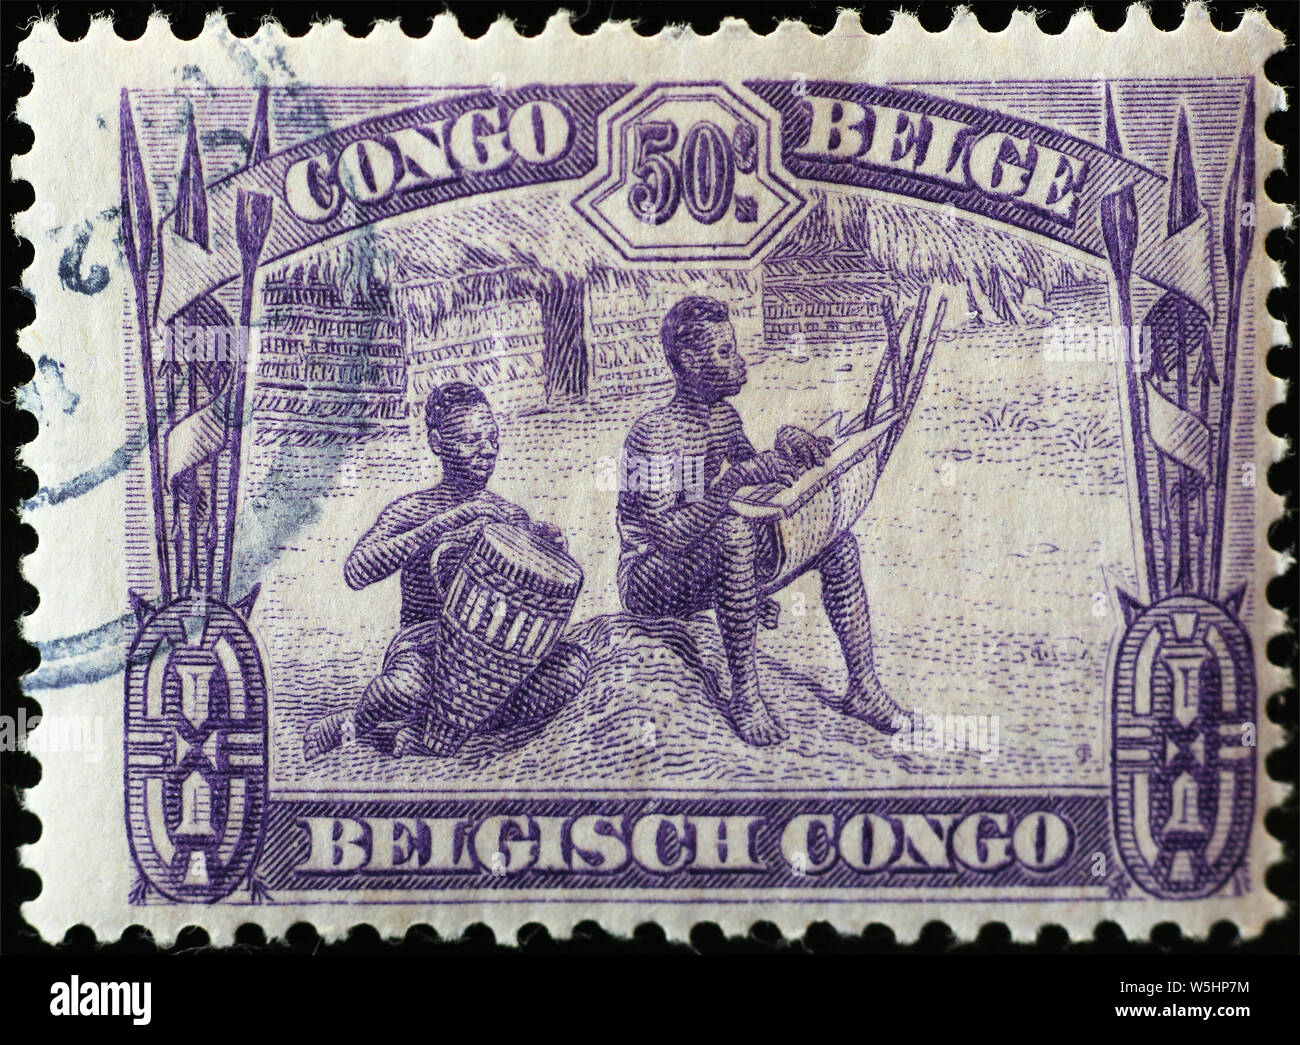 Dos hombres tocando instrumentos africanos en antigüedades sello Foto de stock